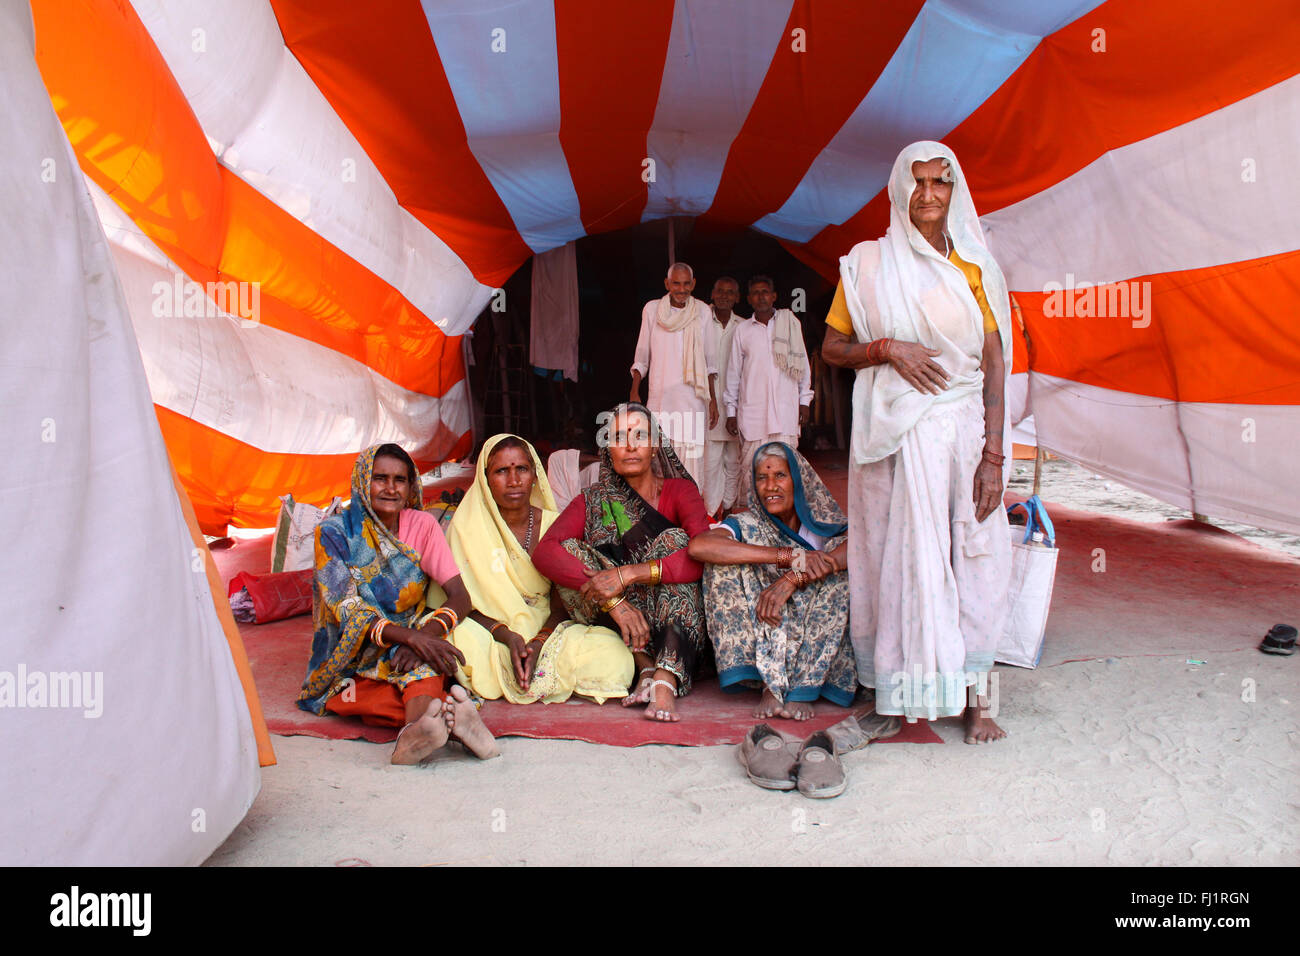 Pèlerins hindous dans une tente au cours de Kumbh Mela à haridwar , Inde Banque D'Images